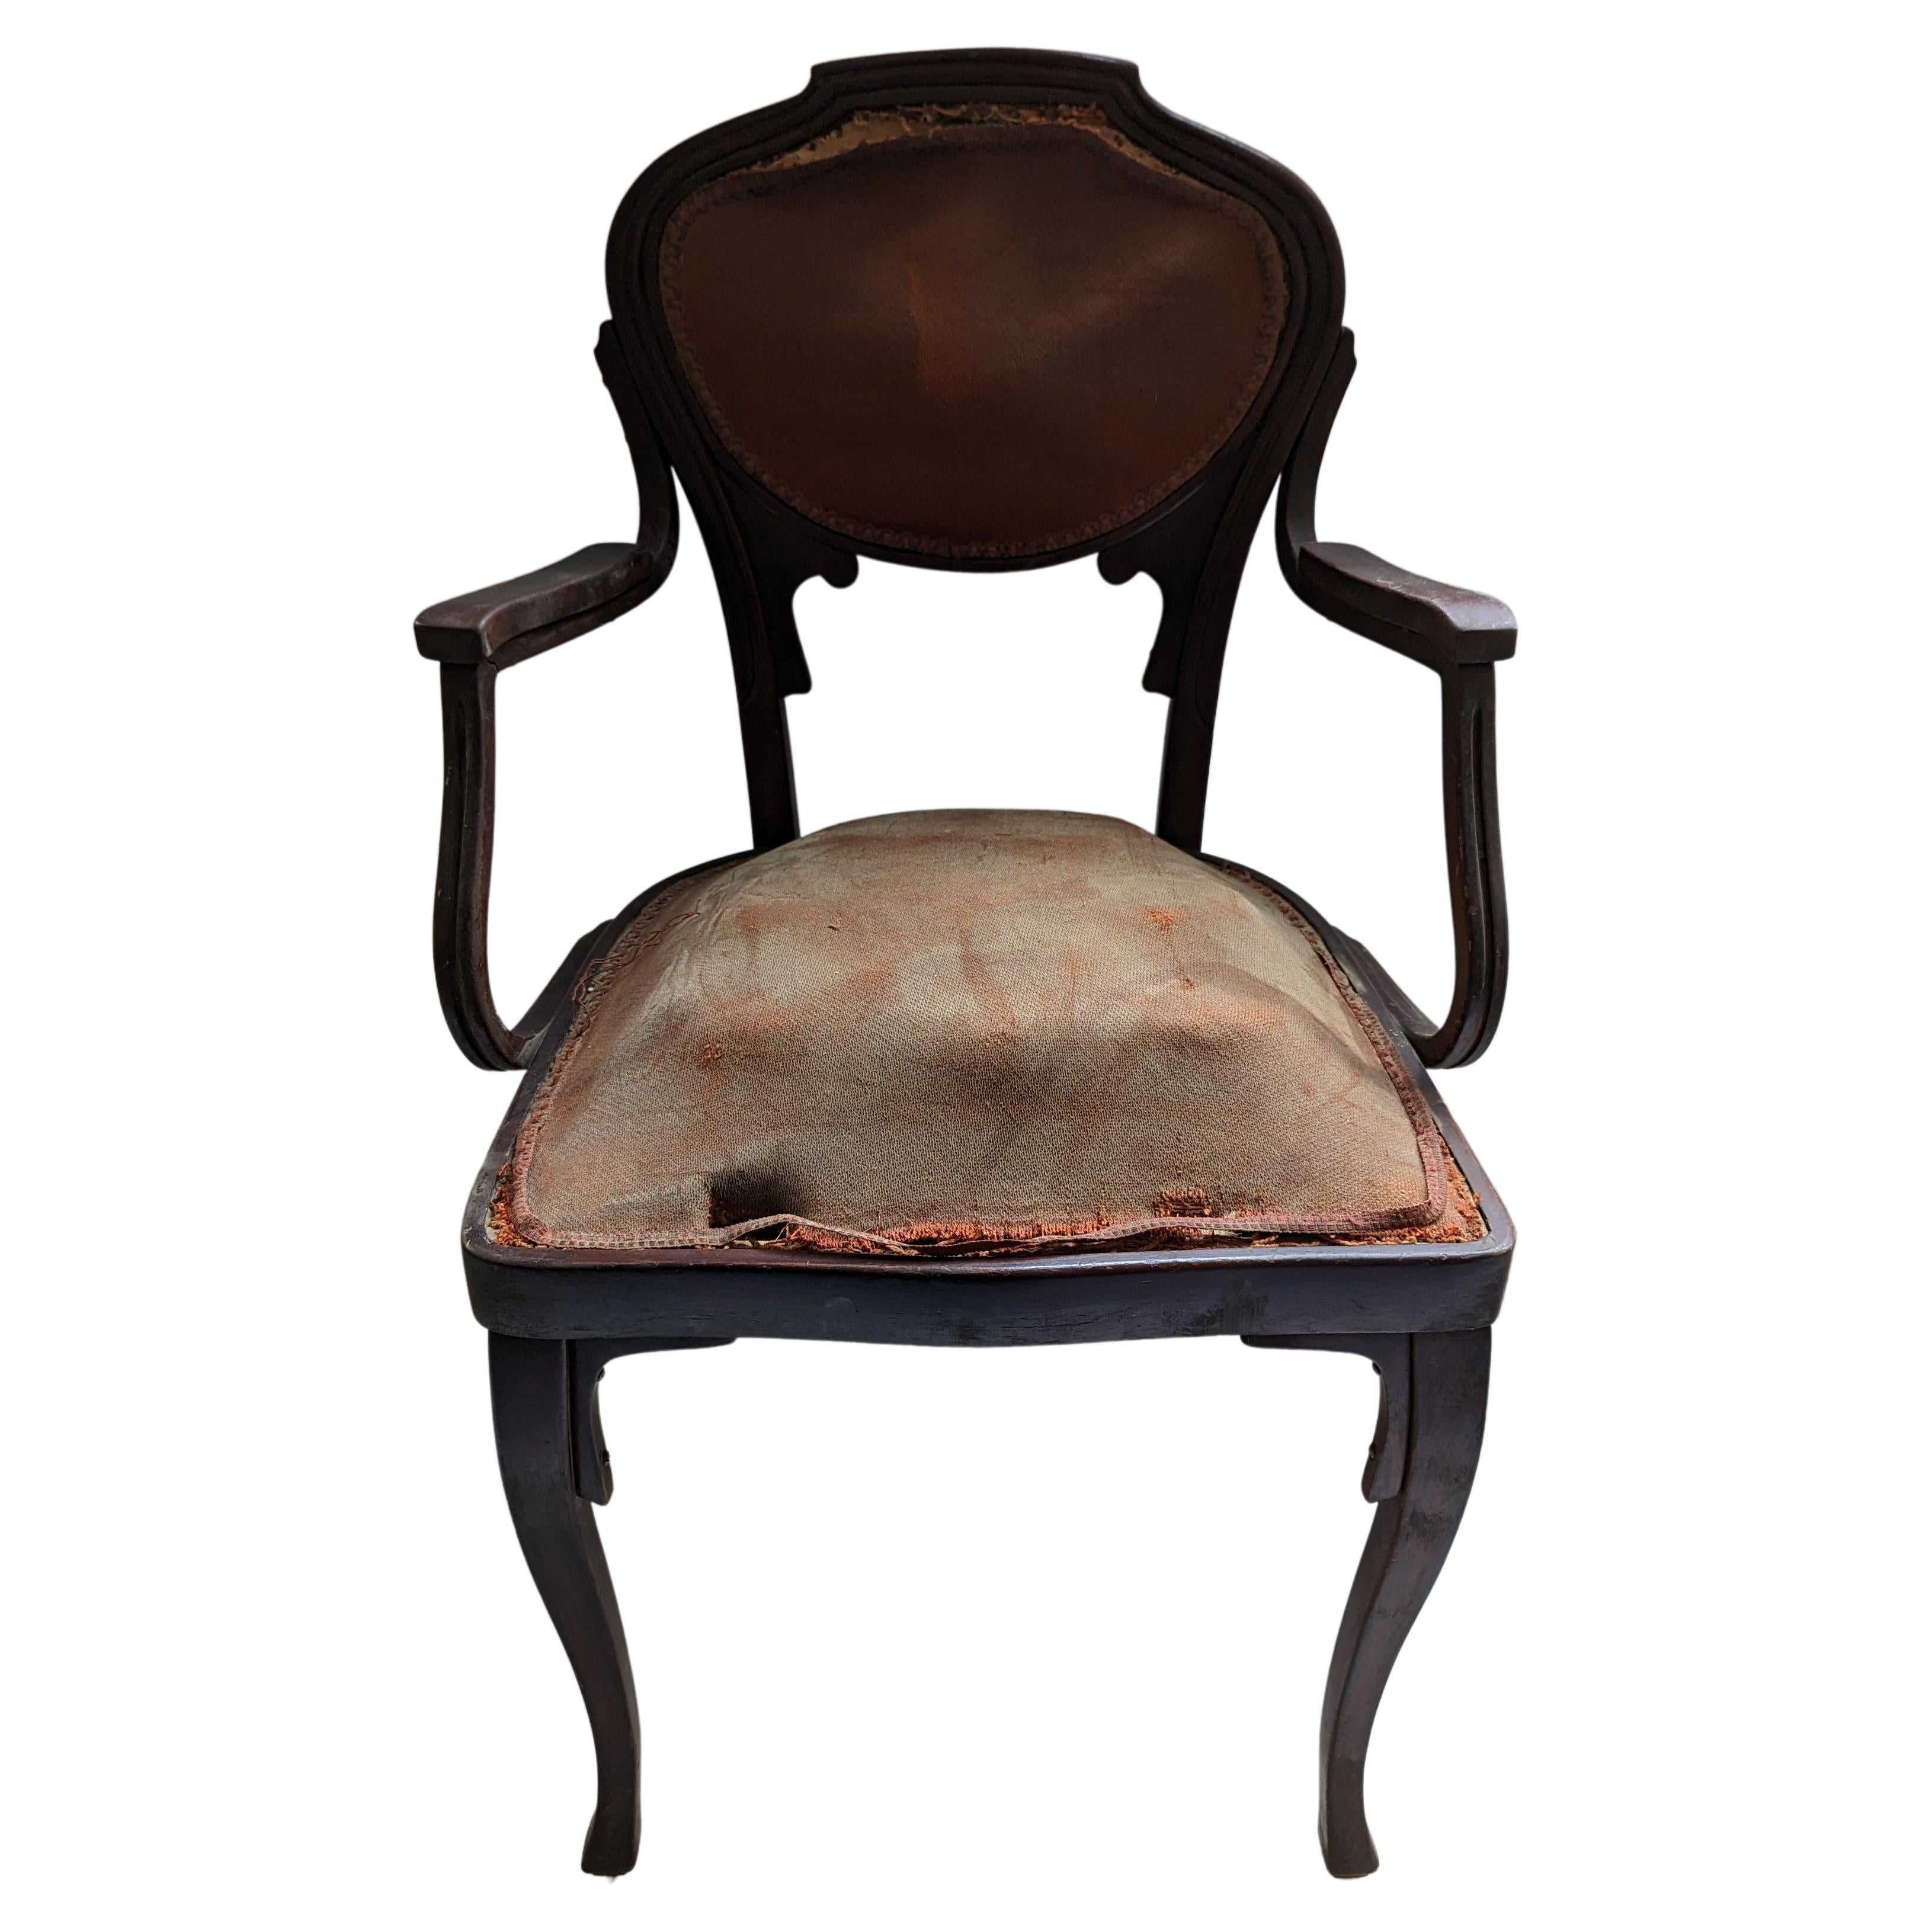 En vente... !  Feal n'hésite pas à faire une offre... !

Ensemble de salon Art Nouveau français composé de 5 pièces : 1 Causeuse (canapé, canape) 2 fauteuils et 2 chaises. L'ensemble a besoin d'être rénové et retapissé. Les photos sont très